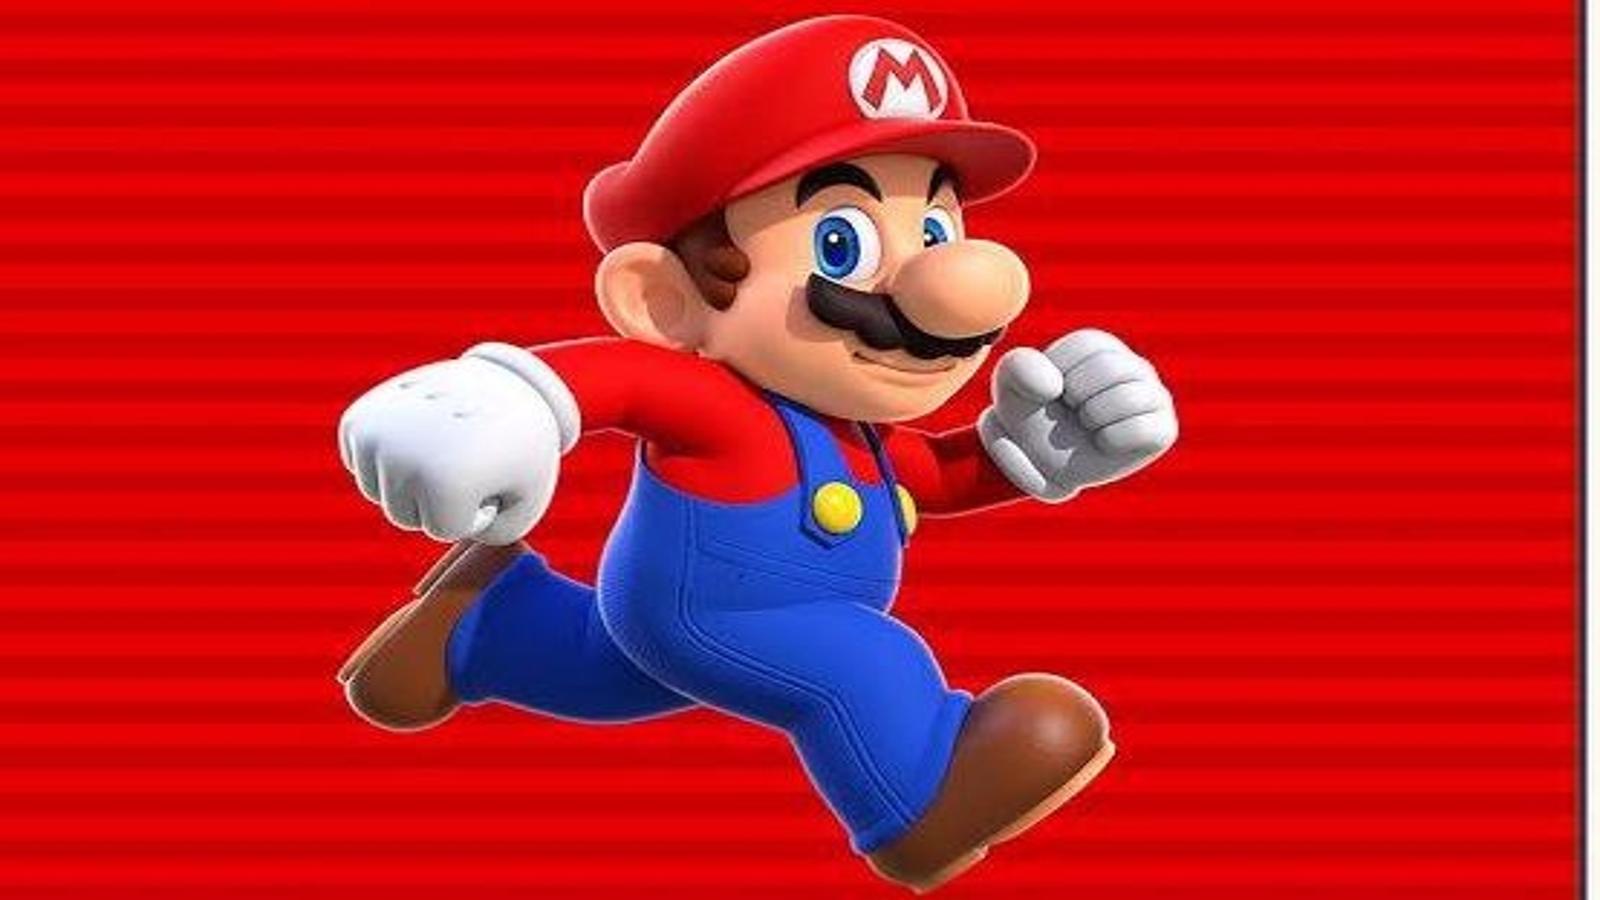 Super Mario Run ya tiene fecha de lanzamiento y precio